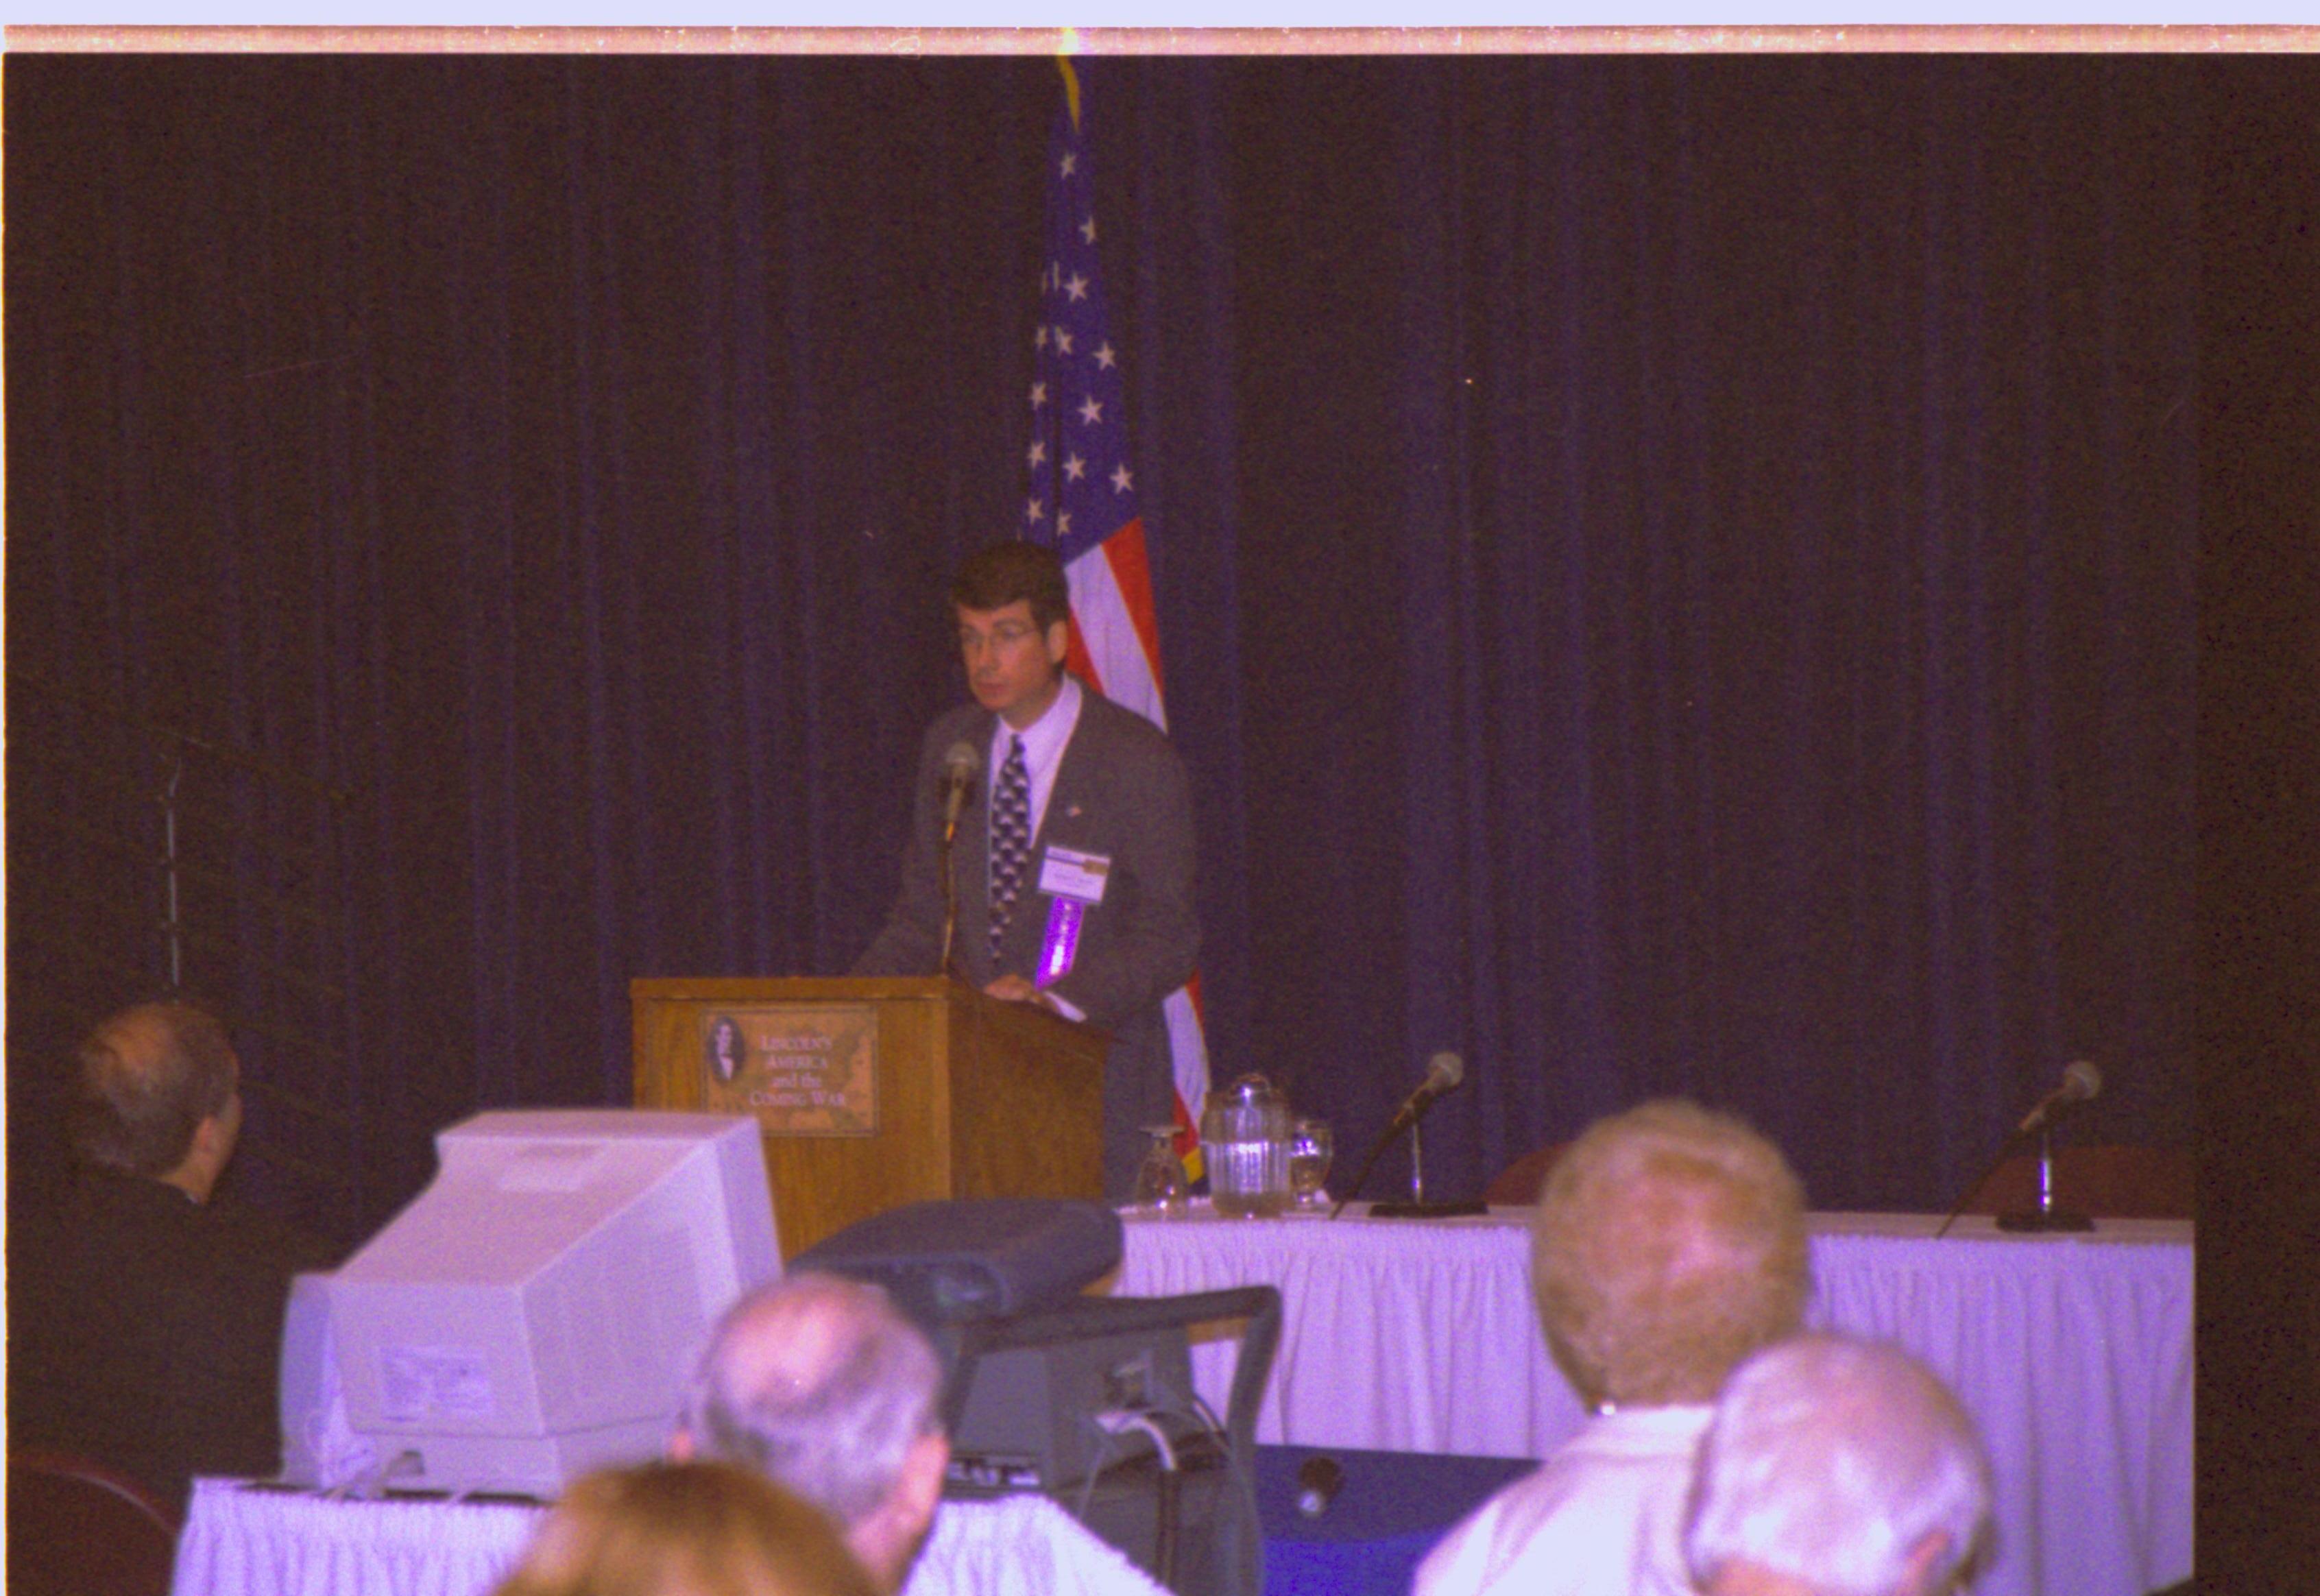 Speaker at podium Colloquium, 2001